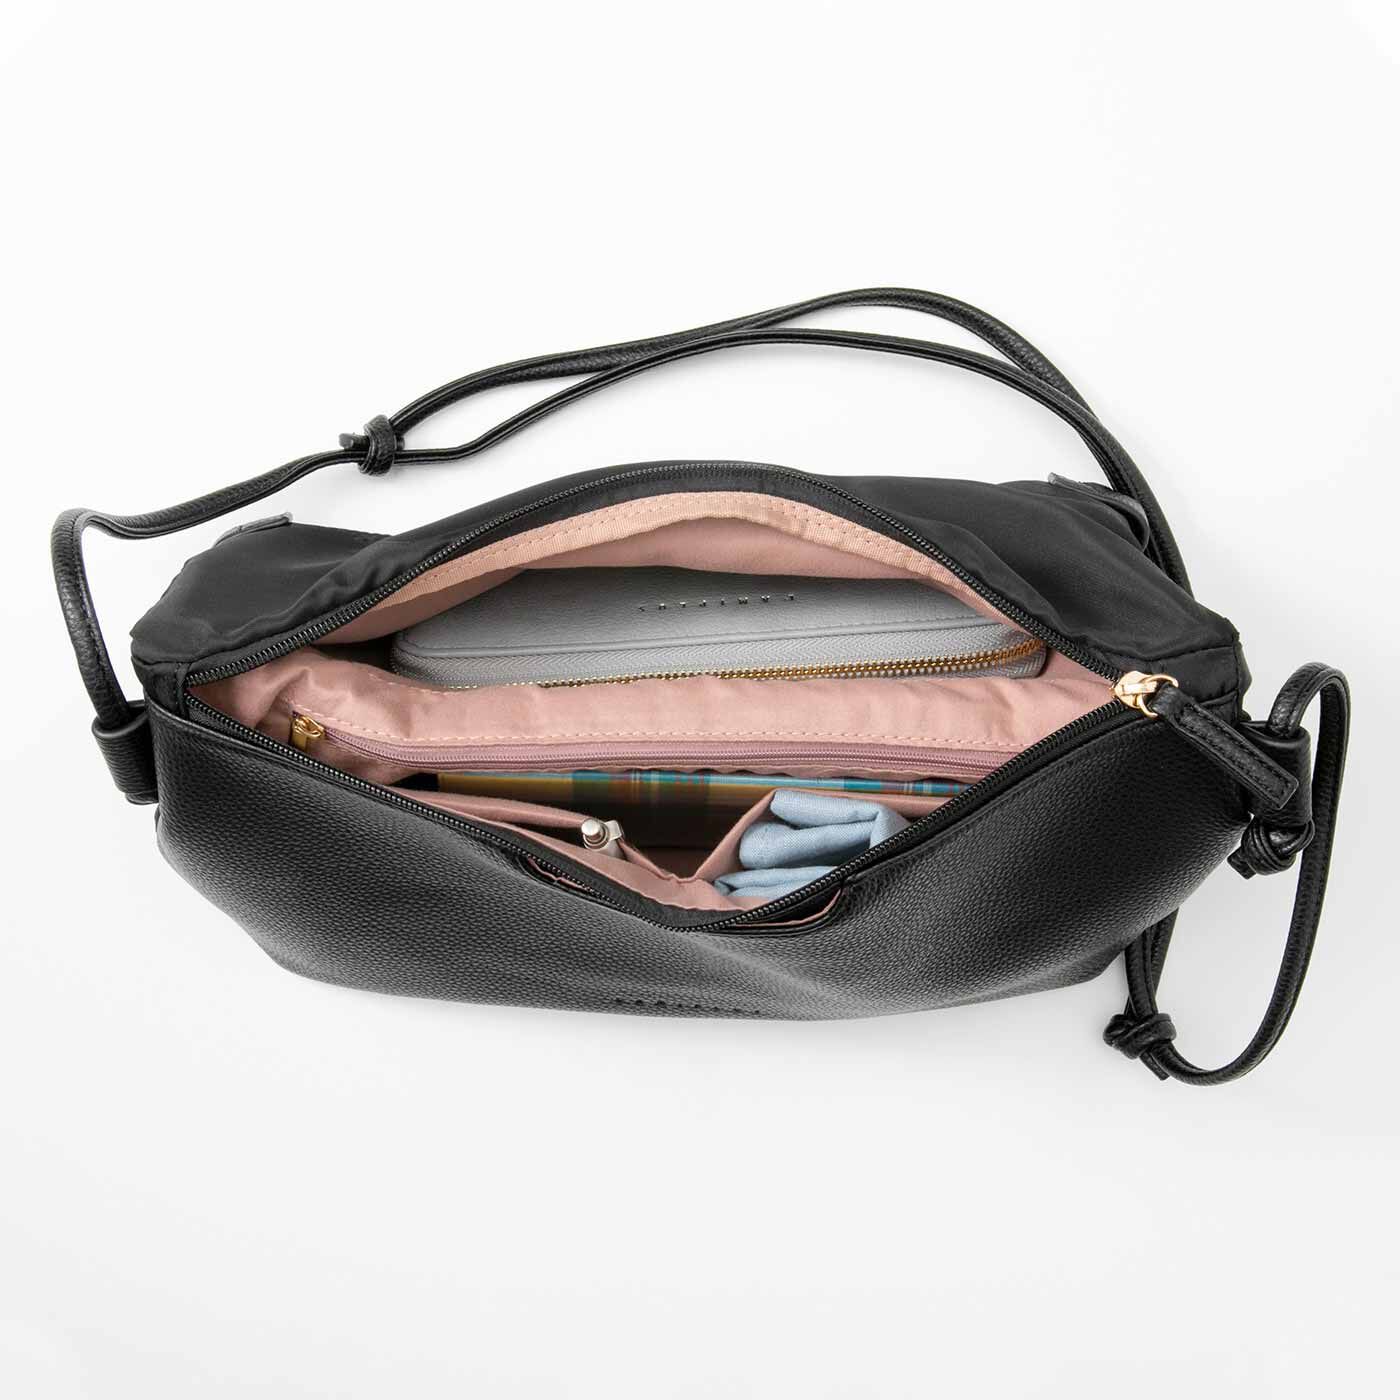 Real Stock|ラミプリュス　A4サイズが入るバッグに変身 パタパタ折り返しポケットが便利なショルダーバッグ|ハーフ使いのときは、真ん中でセパレート。ファスナーポケットとオープンポケットも付いて整とんOK。